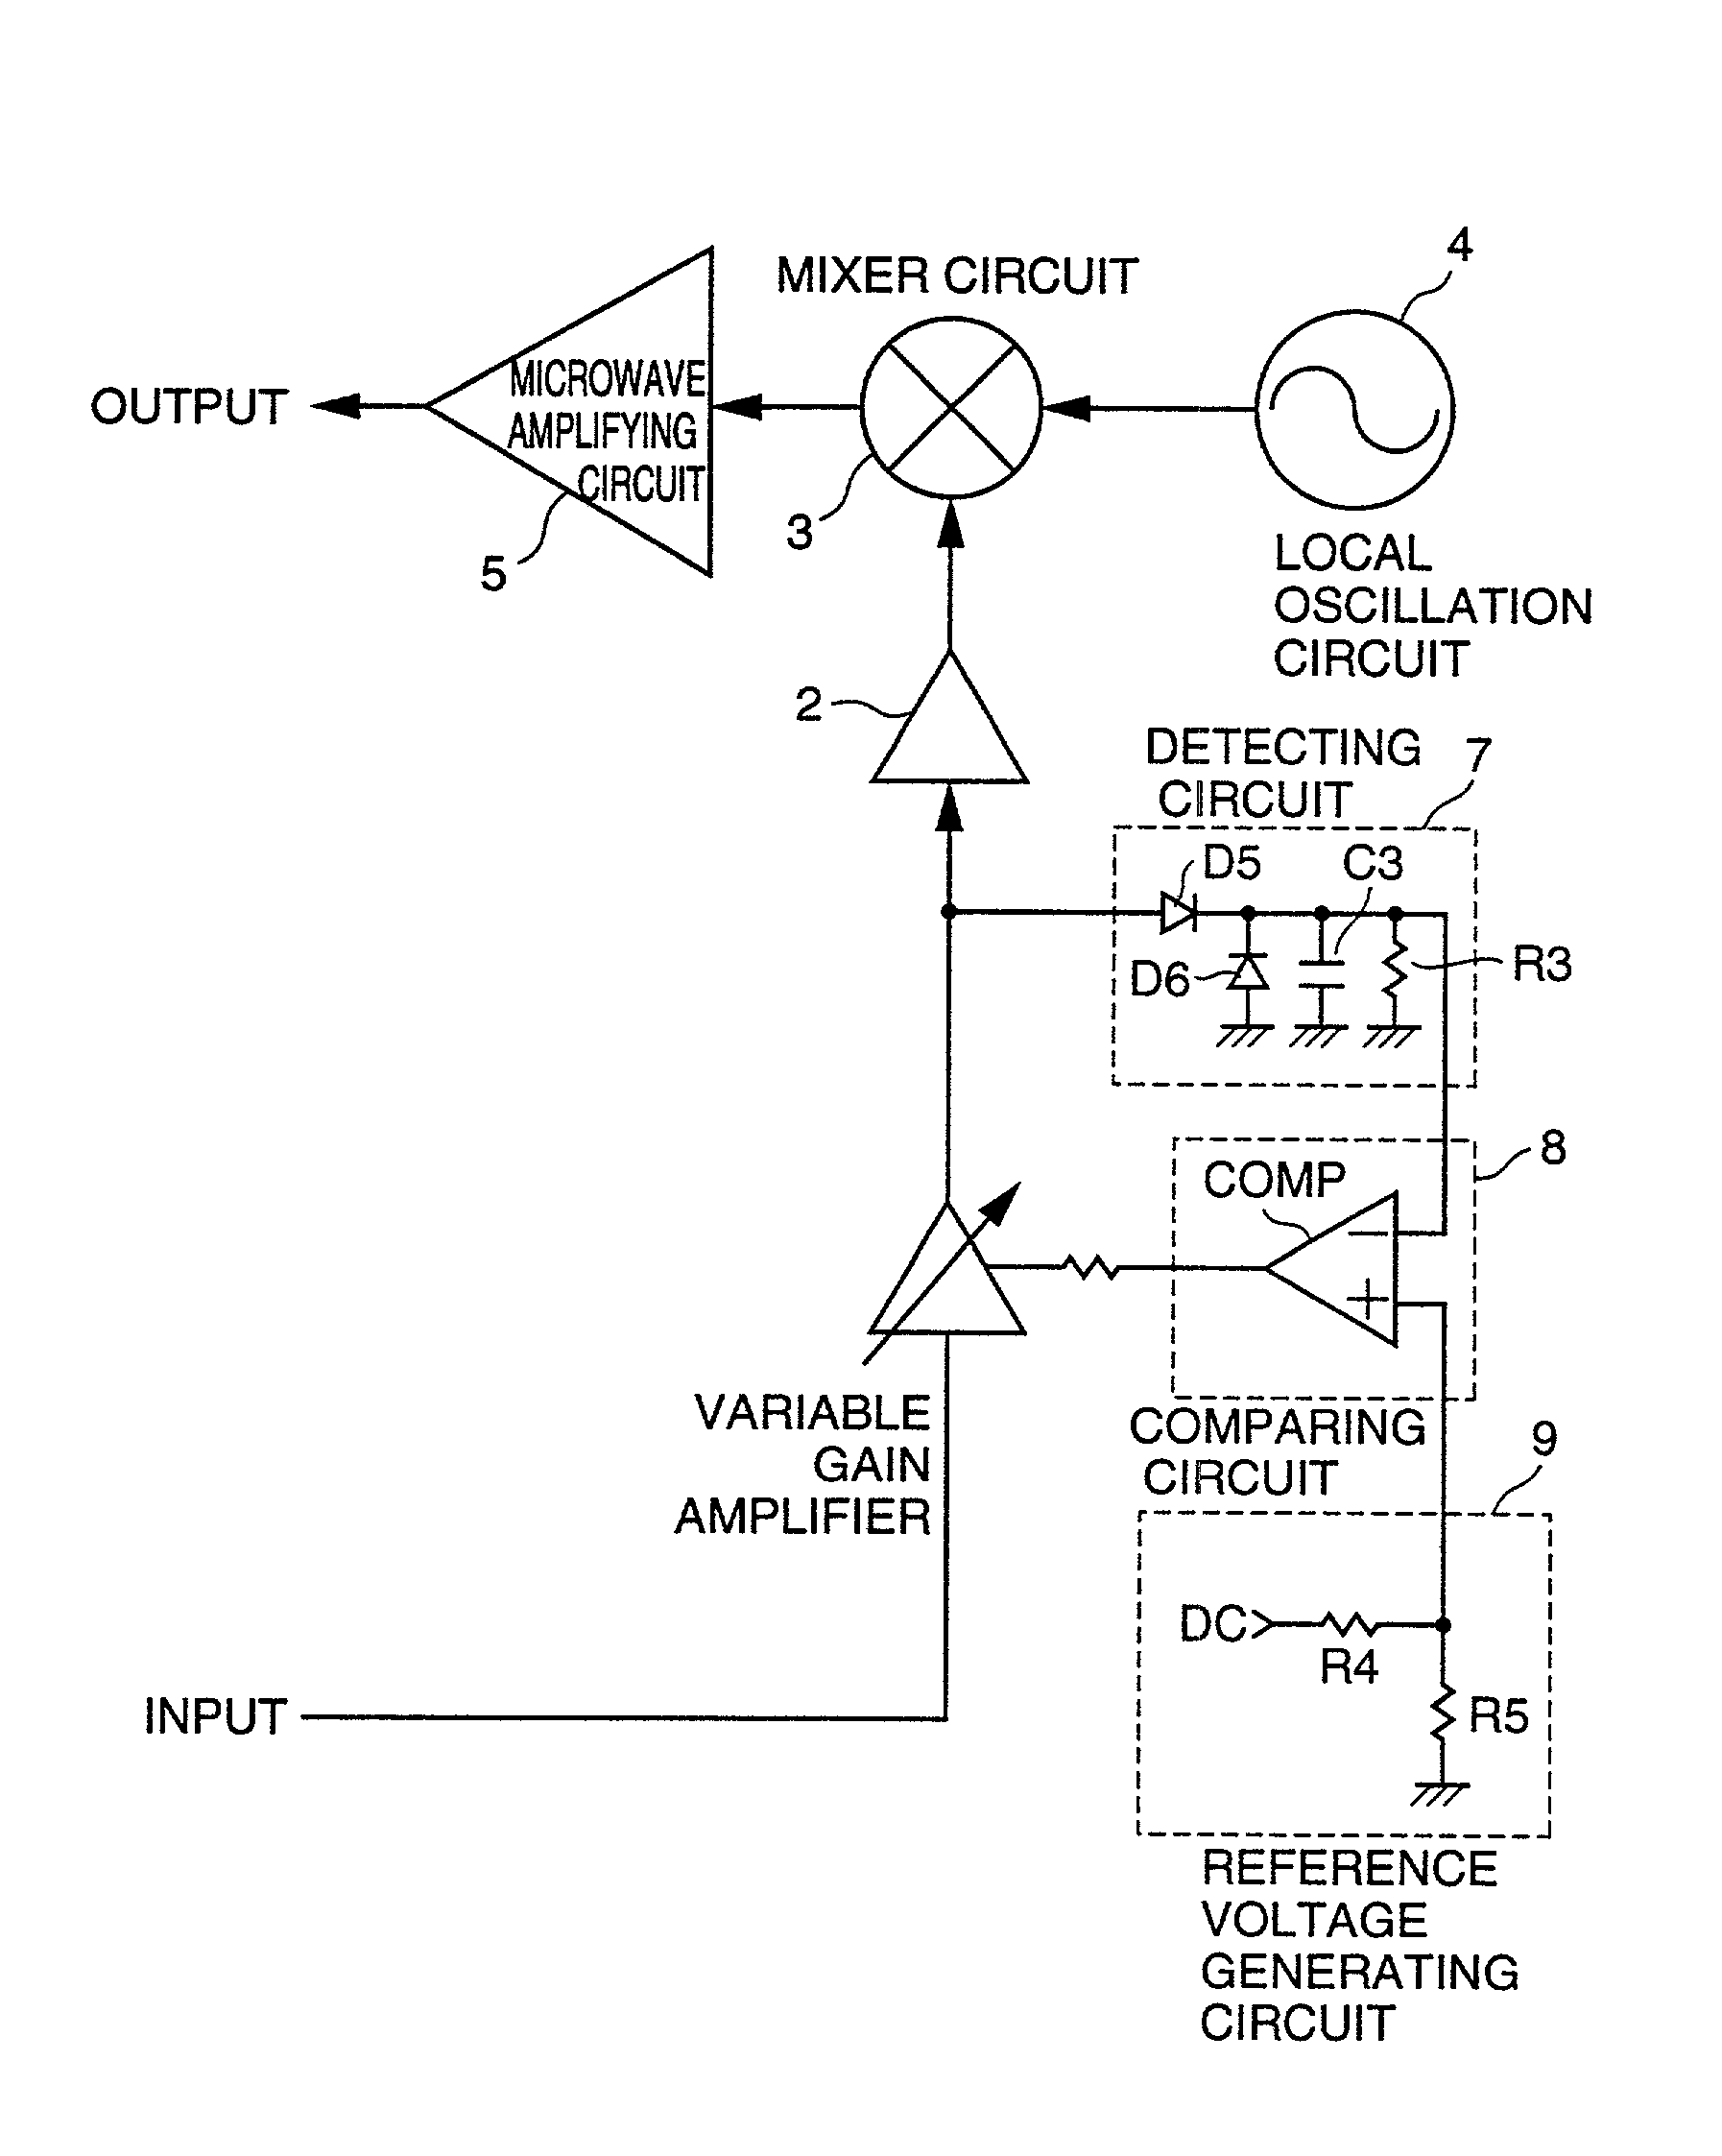 Transmitter